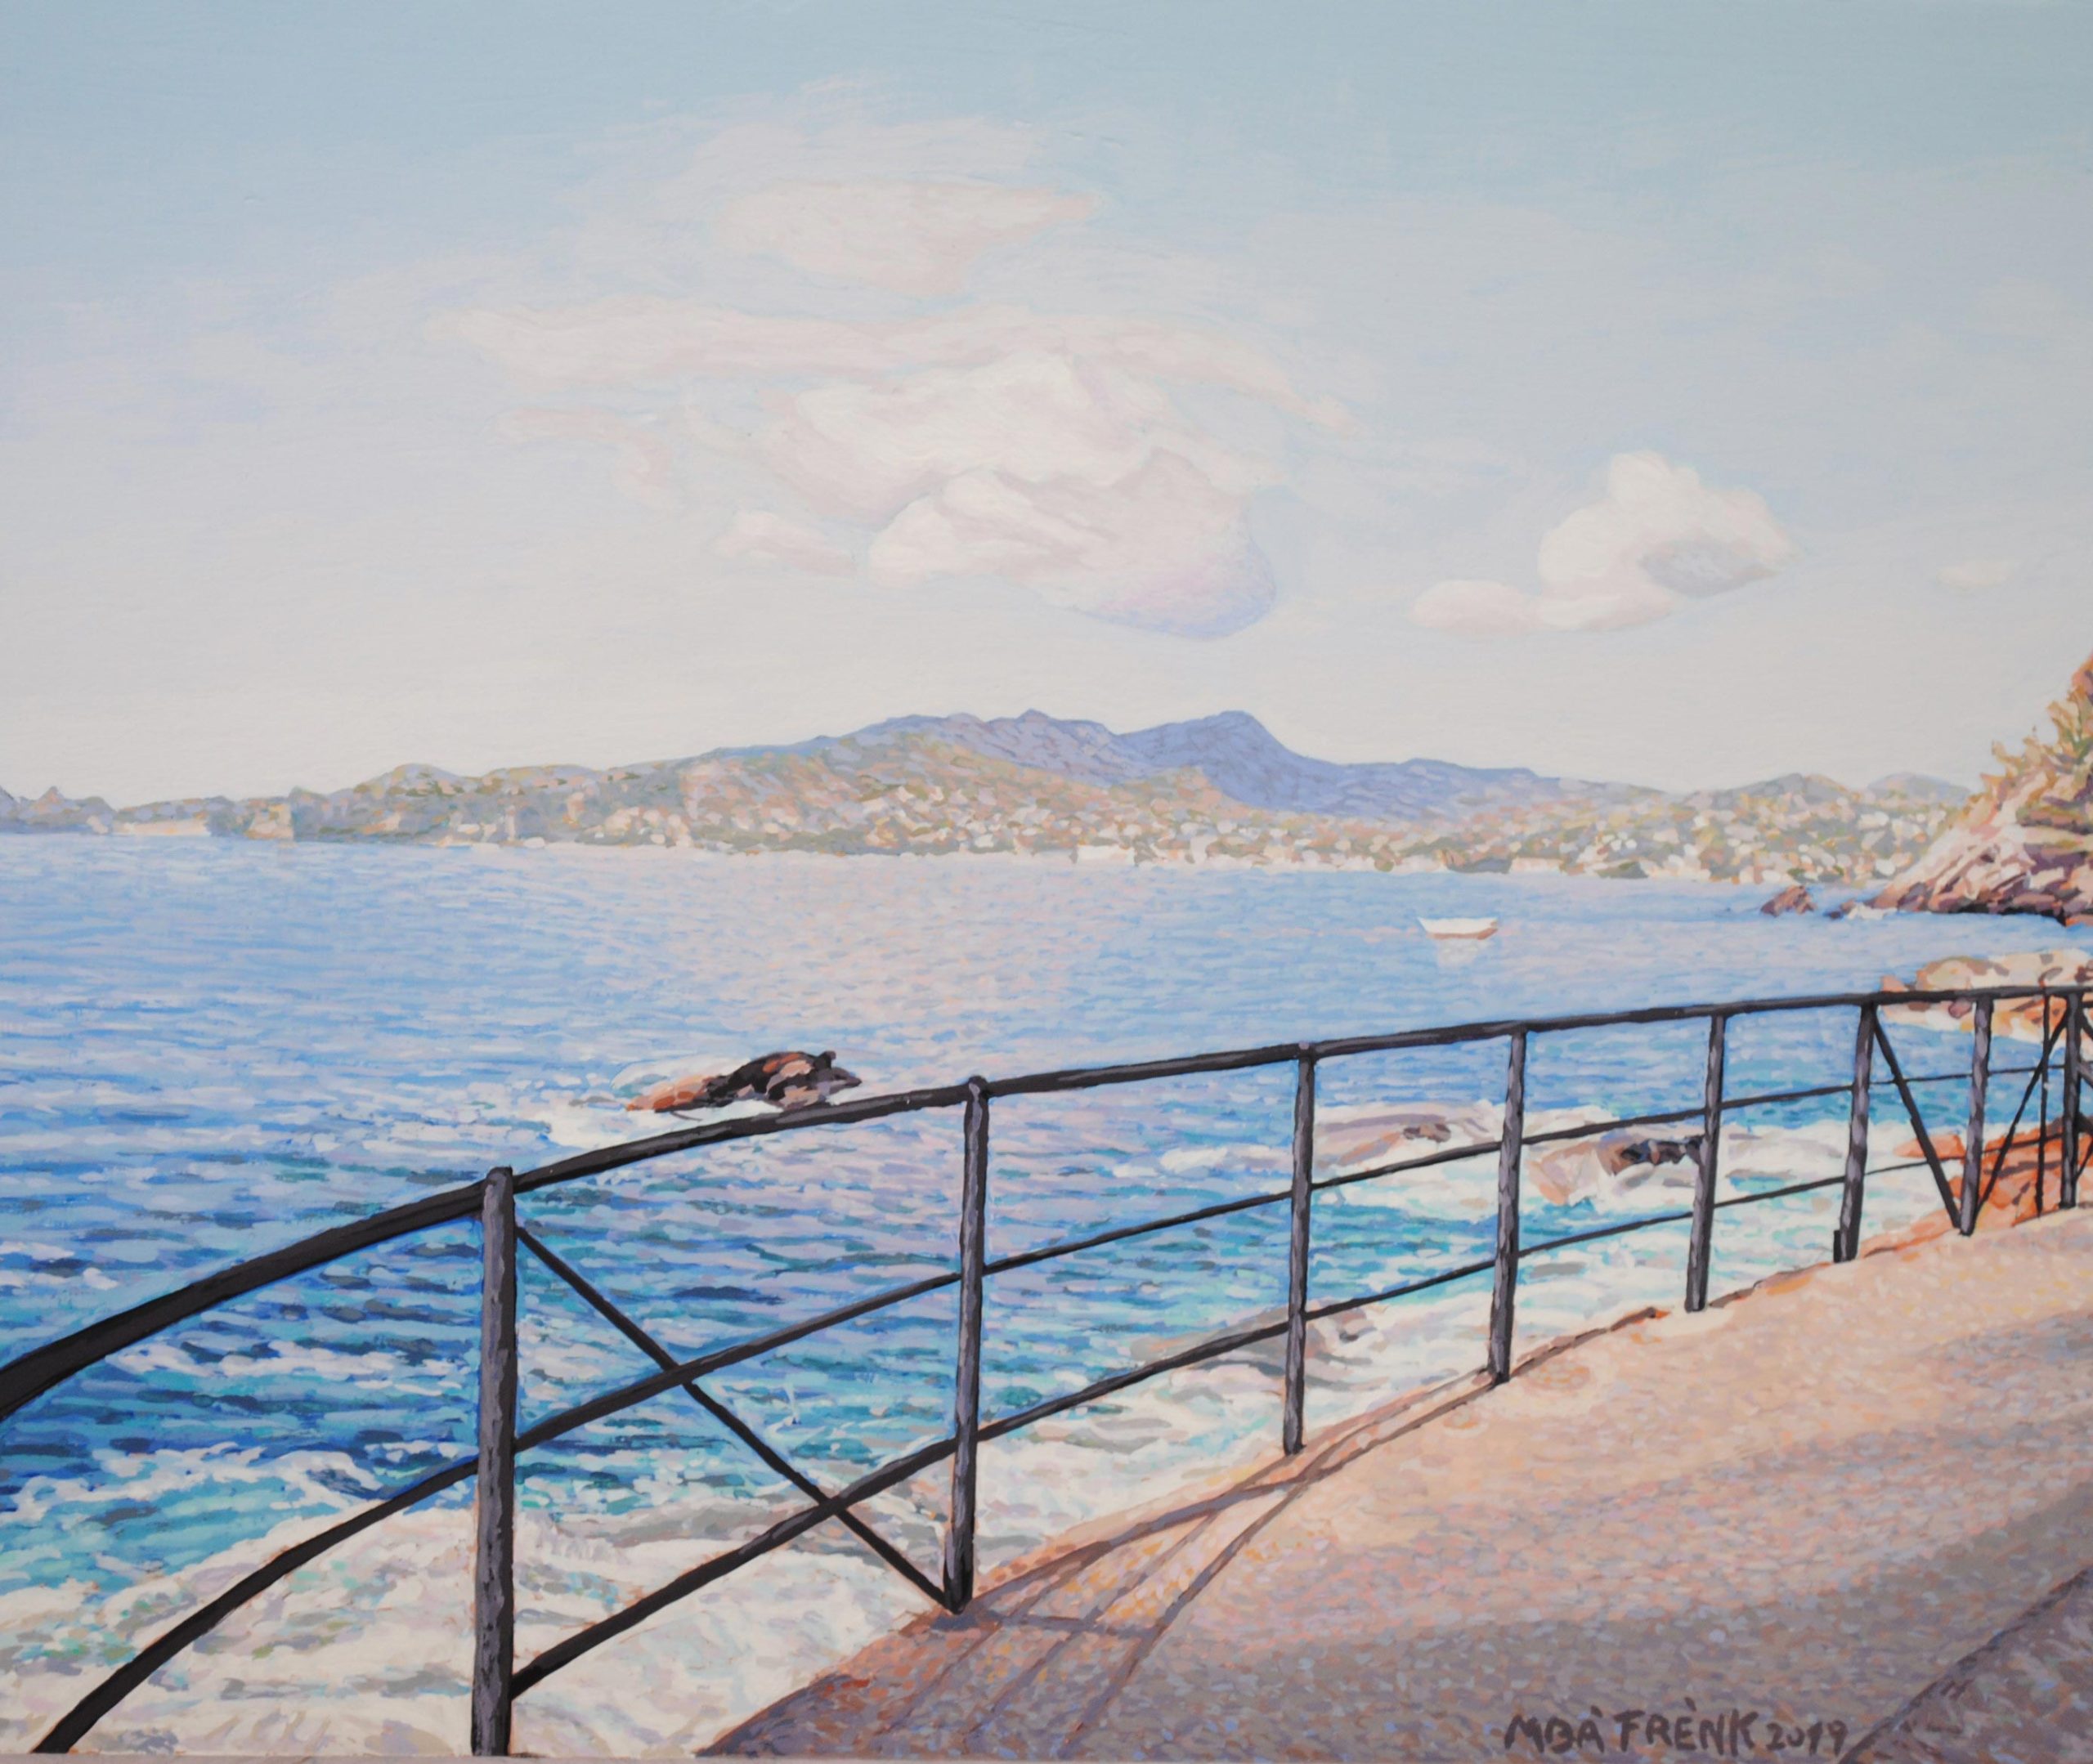 Vendita online opera dal titolo “Zoagli - Passeggiata a mare Est” realizzata dall'artista contemporaneo Mbà Frènk, Francesco Cassanelli